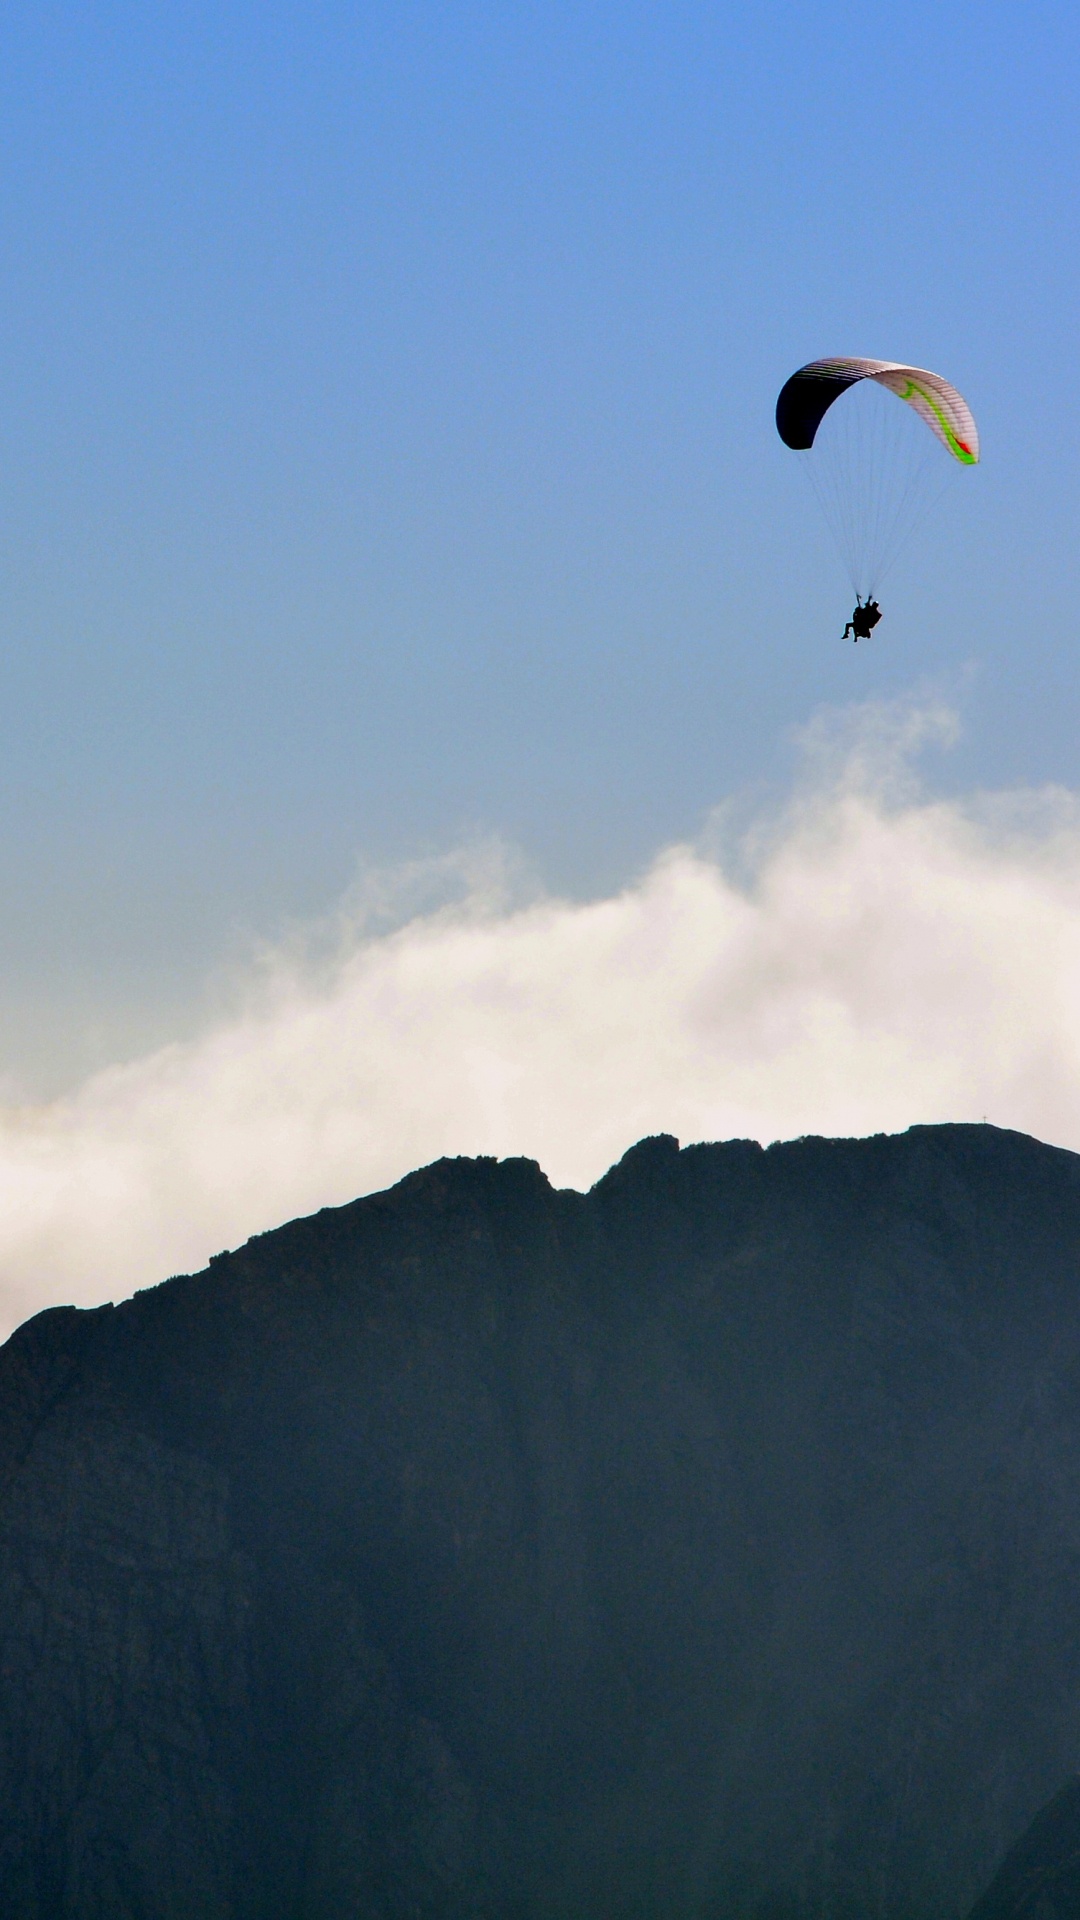 Personne Faisant du Parachute Au-dessus de la Montagne. Wallpaper in 1080x1920 Resolution